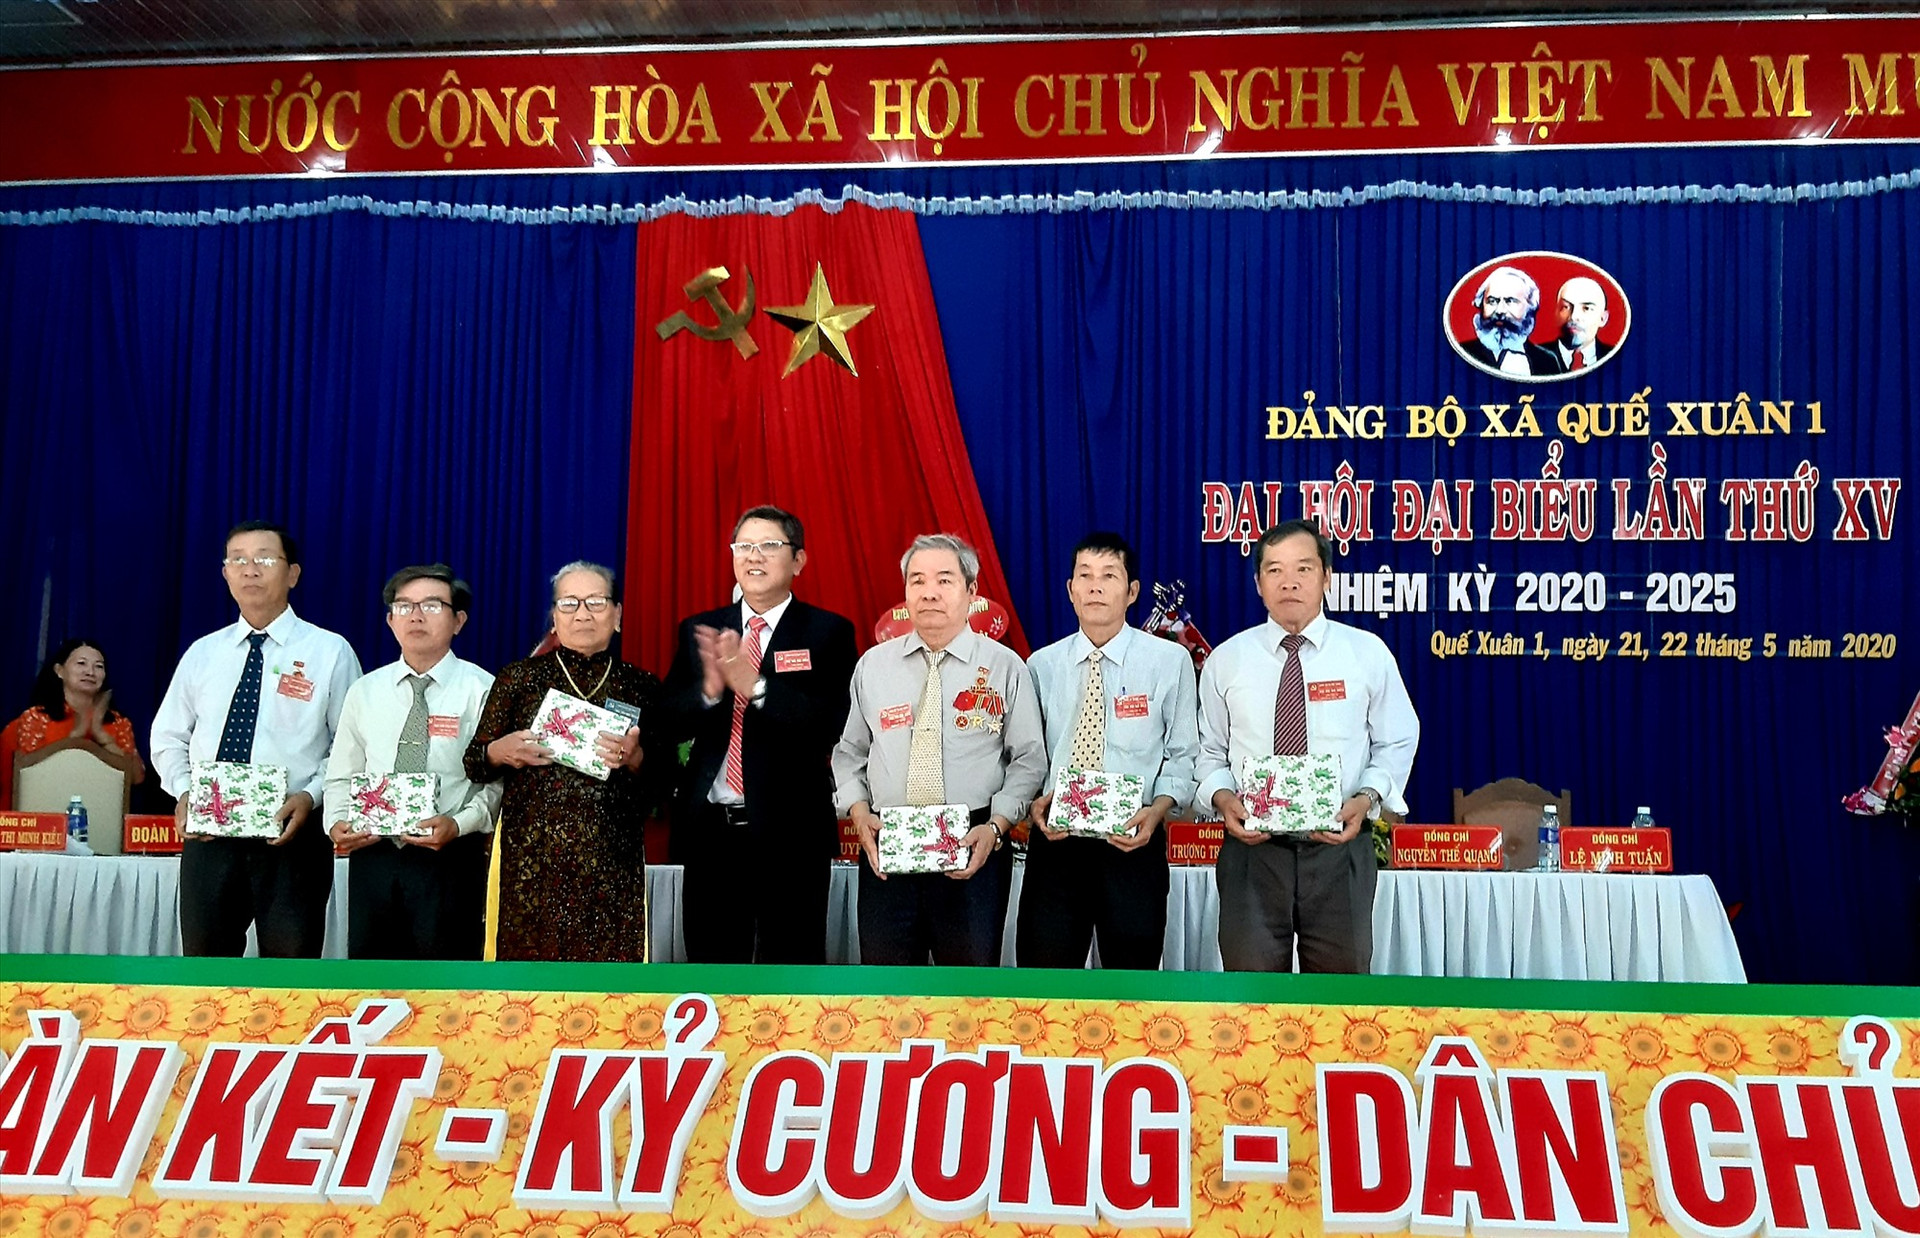 Tại đại hội, lãnh đạo địa phương tặng quà Bà mẹ Việt Nam anh hùng Nguyễn Thị Tá và một số đồng chí nguyên là cán bộ lãnh đạo xã qua các thời kỳ.  Ảnh: VĂN SỰ